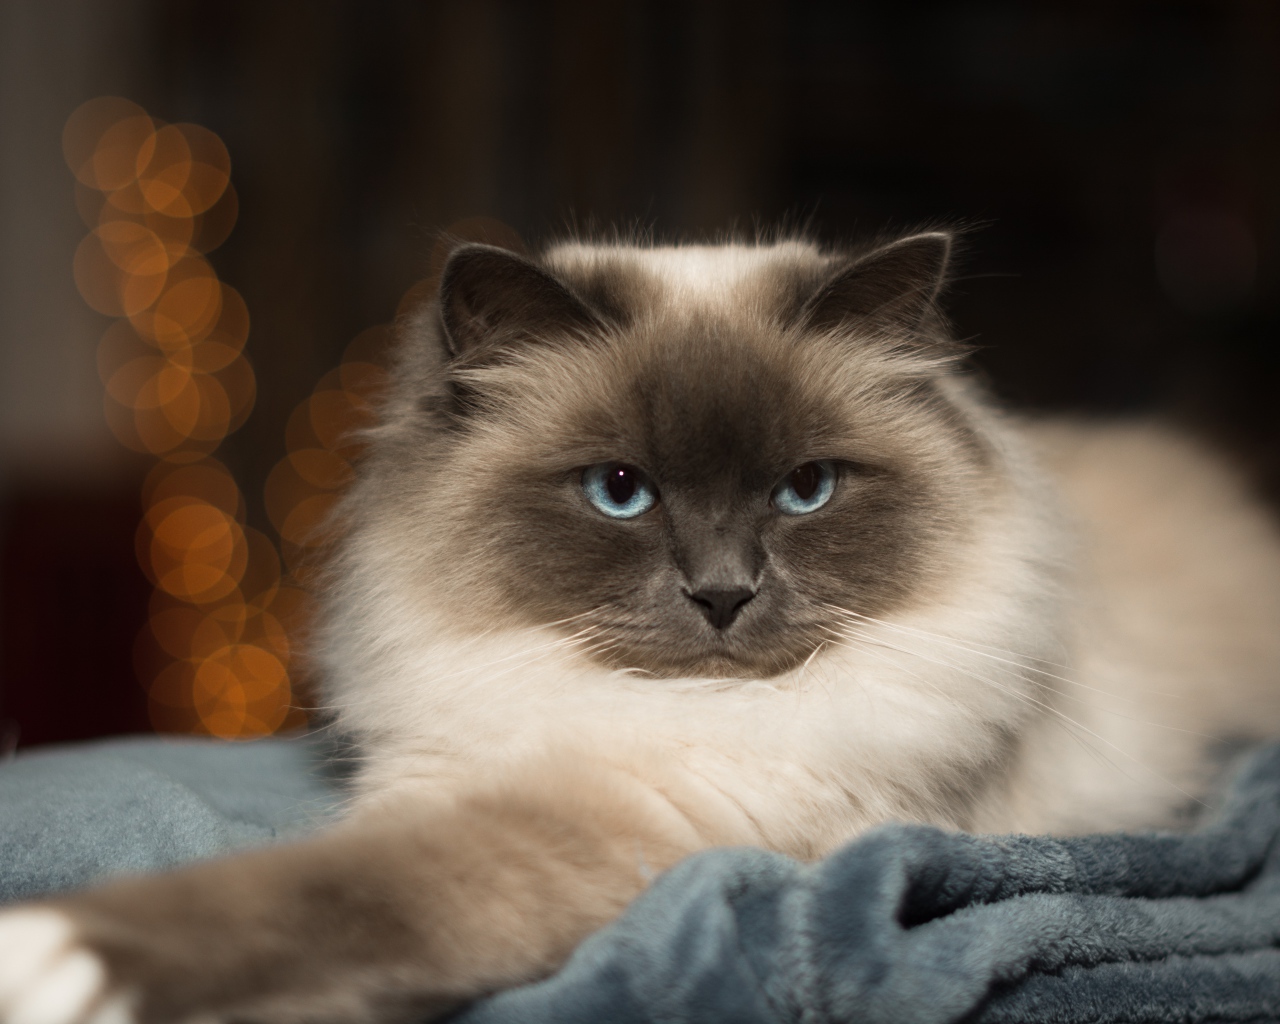 Породистый пушистый голубоглазый кот лежит на кровати